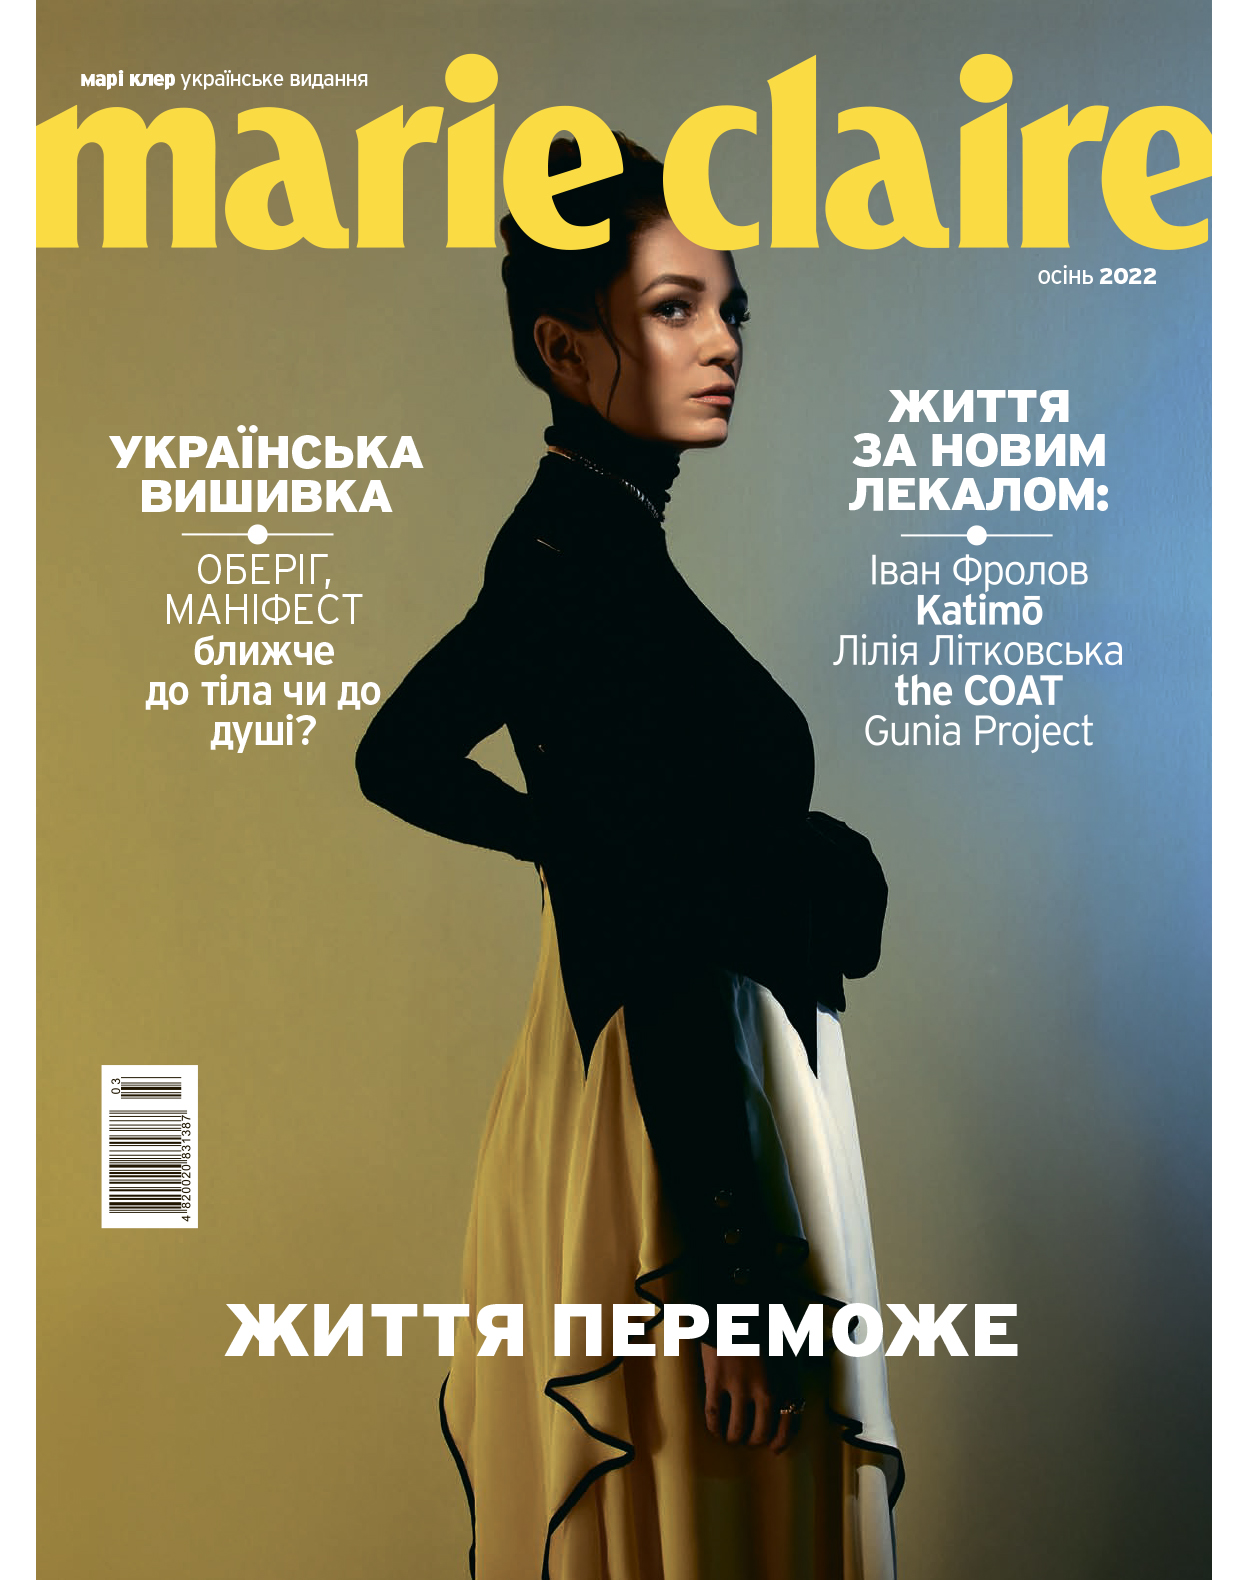 Життя переможе: перший після початку повномасштабної війни друкований номер Marie Claire Ukraine-Фото 1